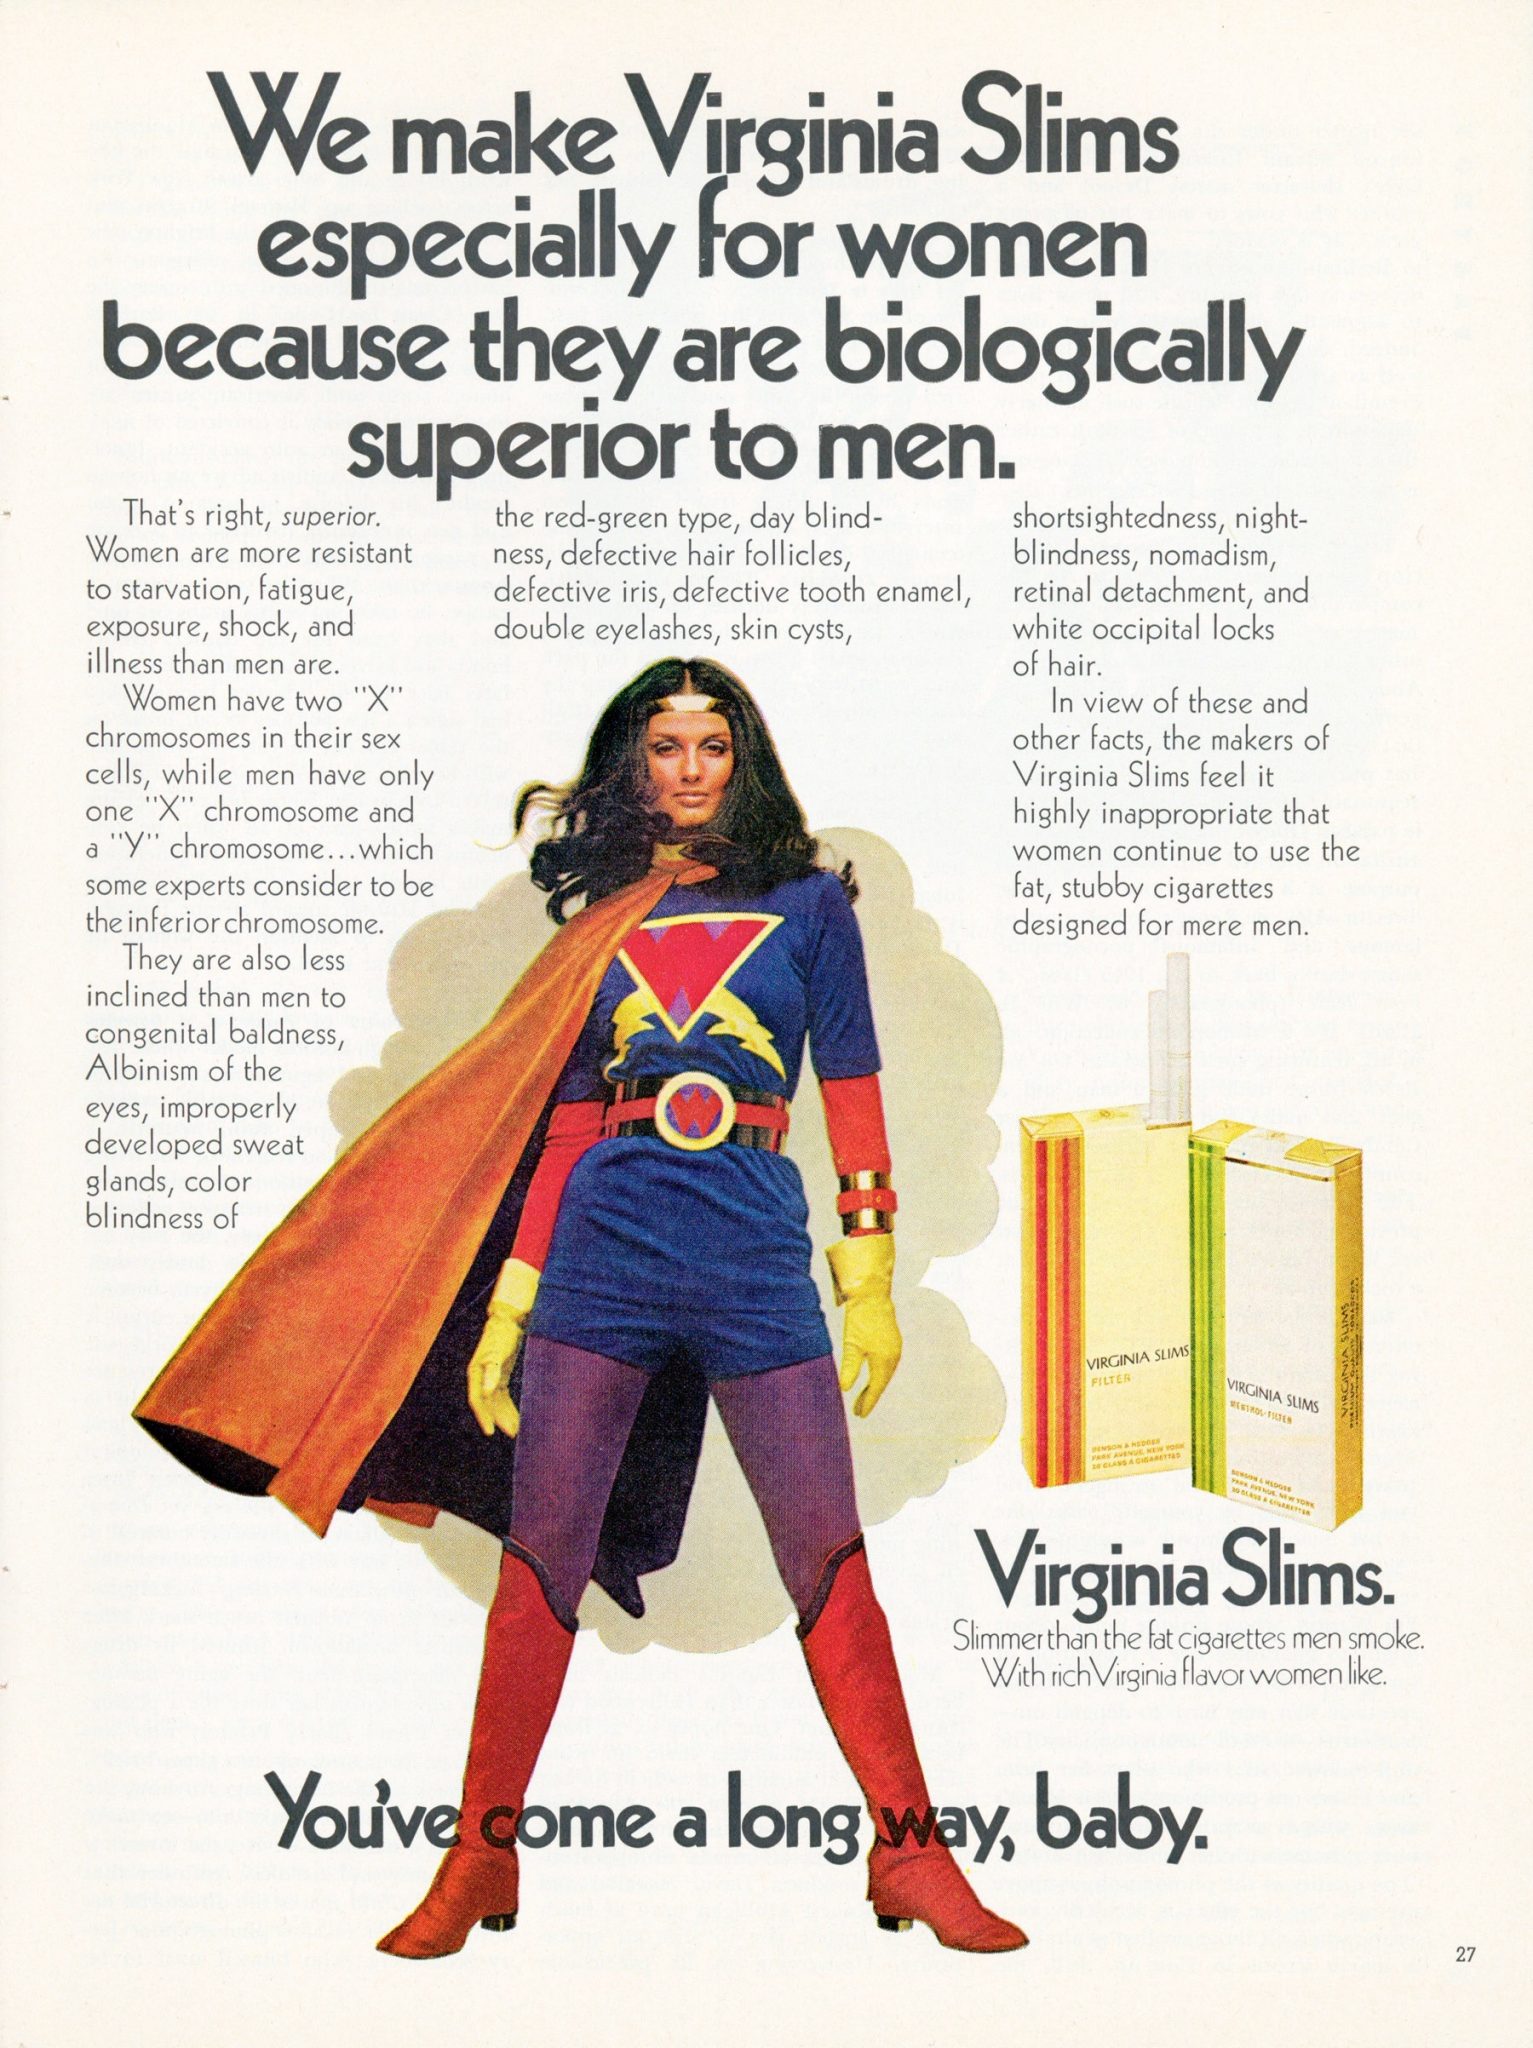 VA Slims ad